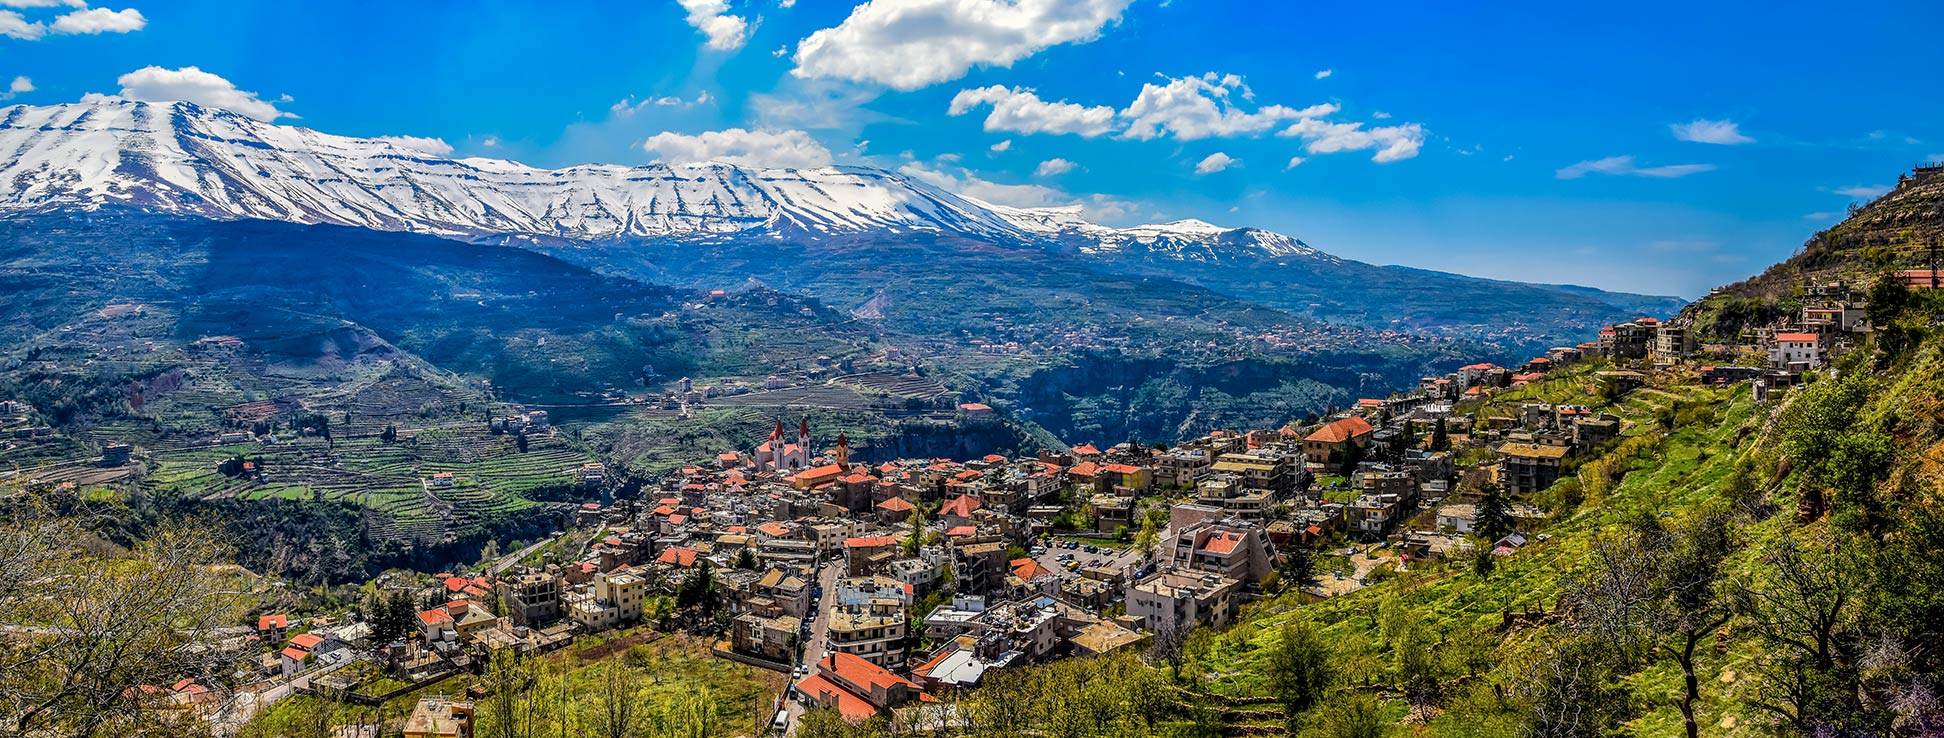 The village of Bsharri (Bsharri) in the Lebanon Mountains